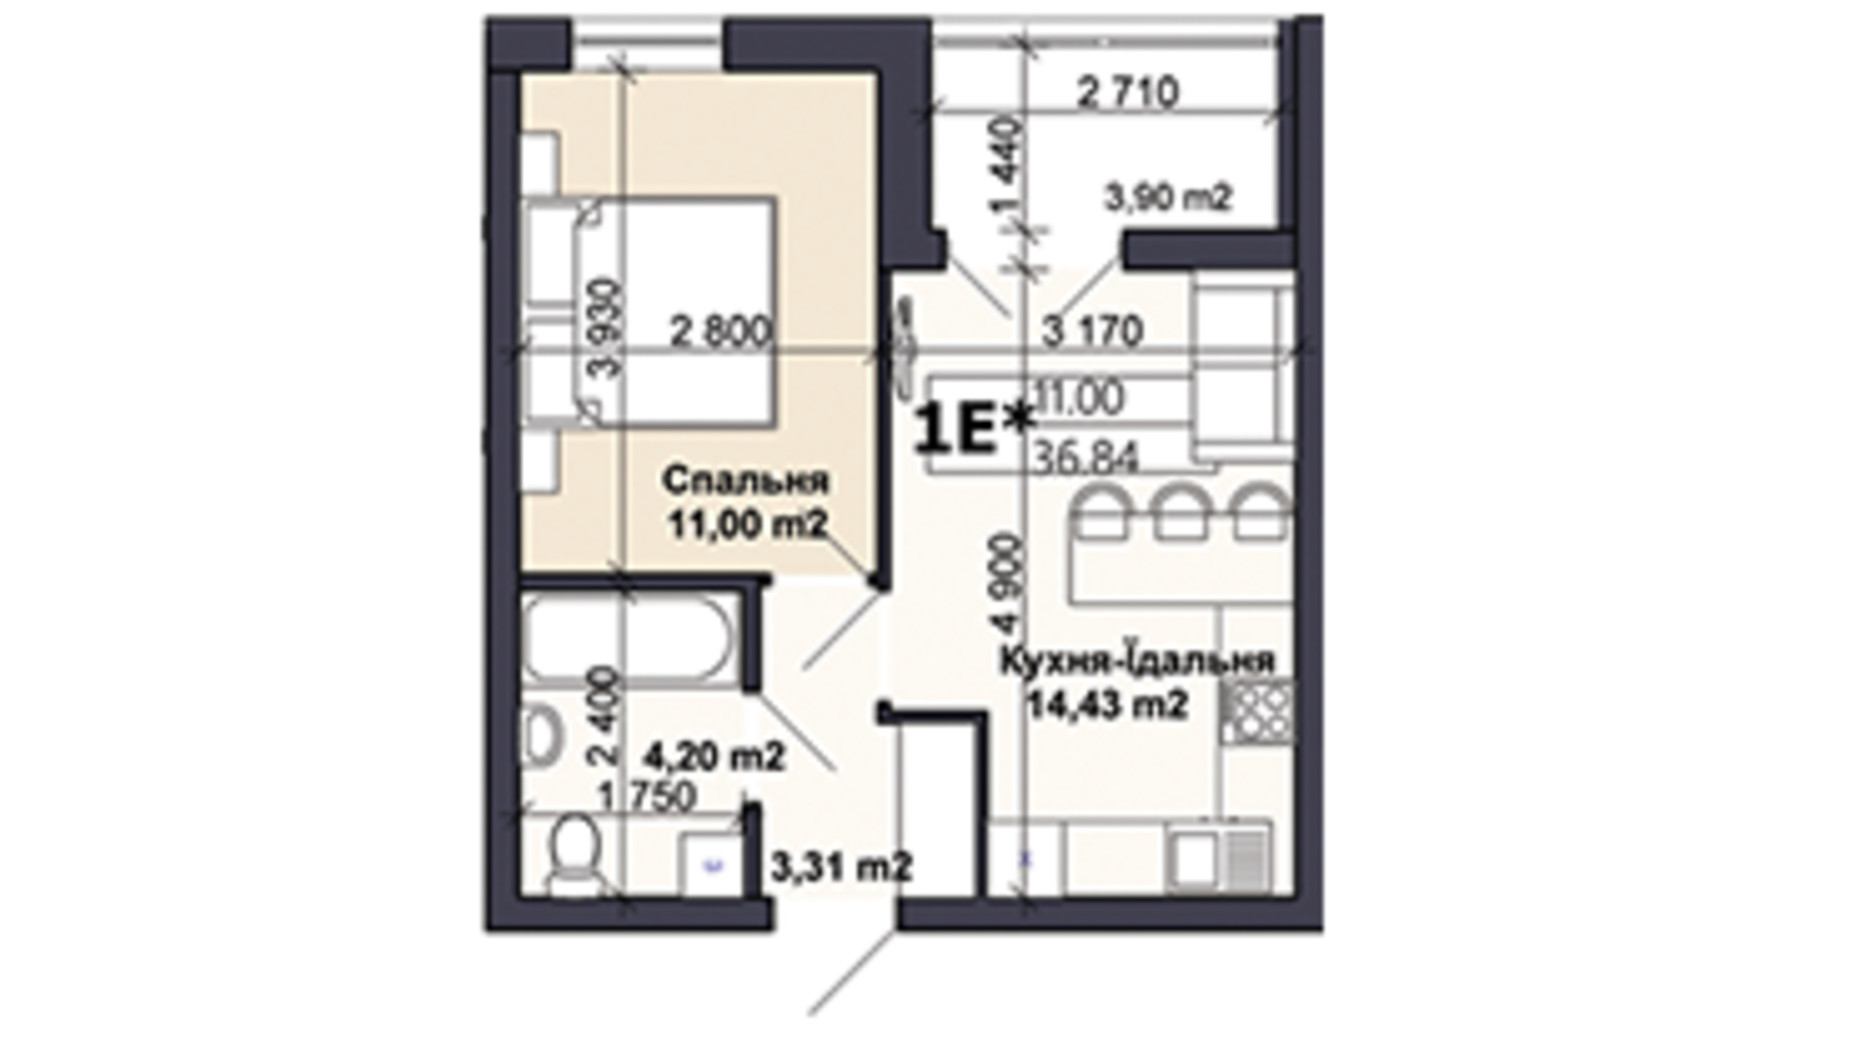 Планування 1-кімнатної квартири в ЖК Саме той 36.84 м², фото 585410